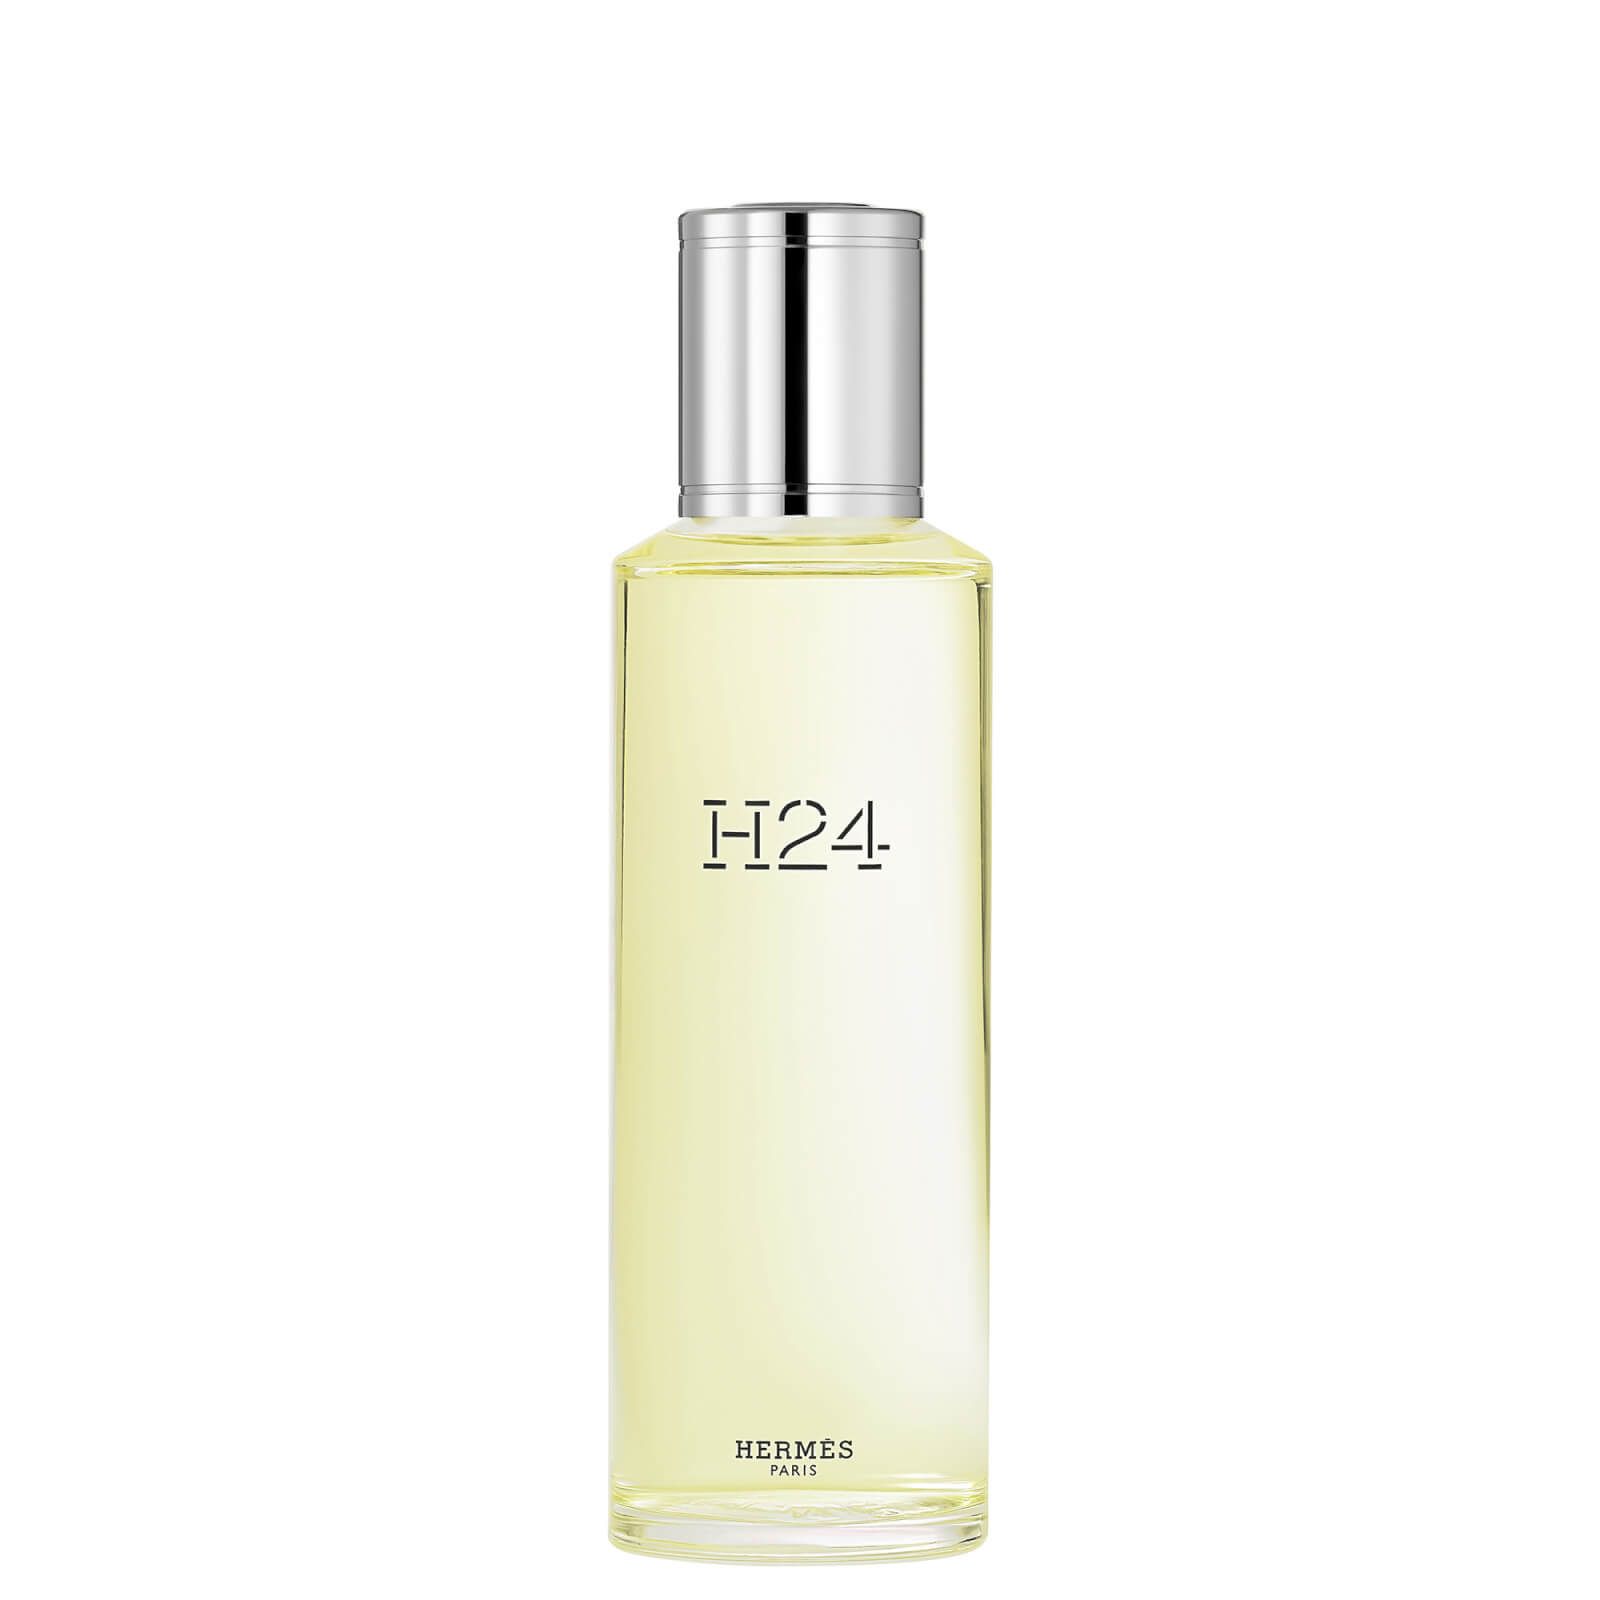 Photos - Women's Fragrance Hermes Hermès H24 Eau de Toilette Refill 125ml 101565V0 